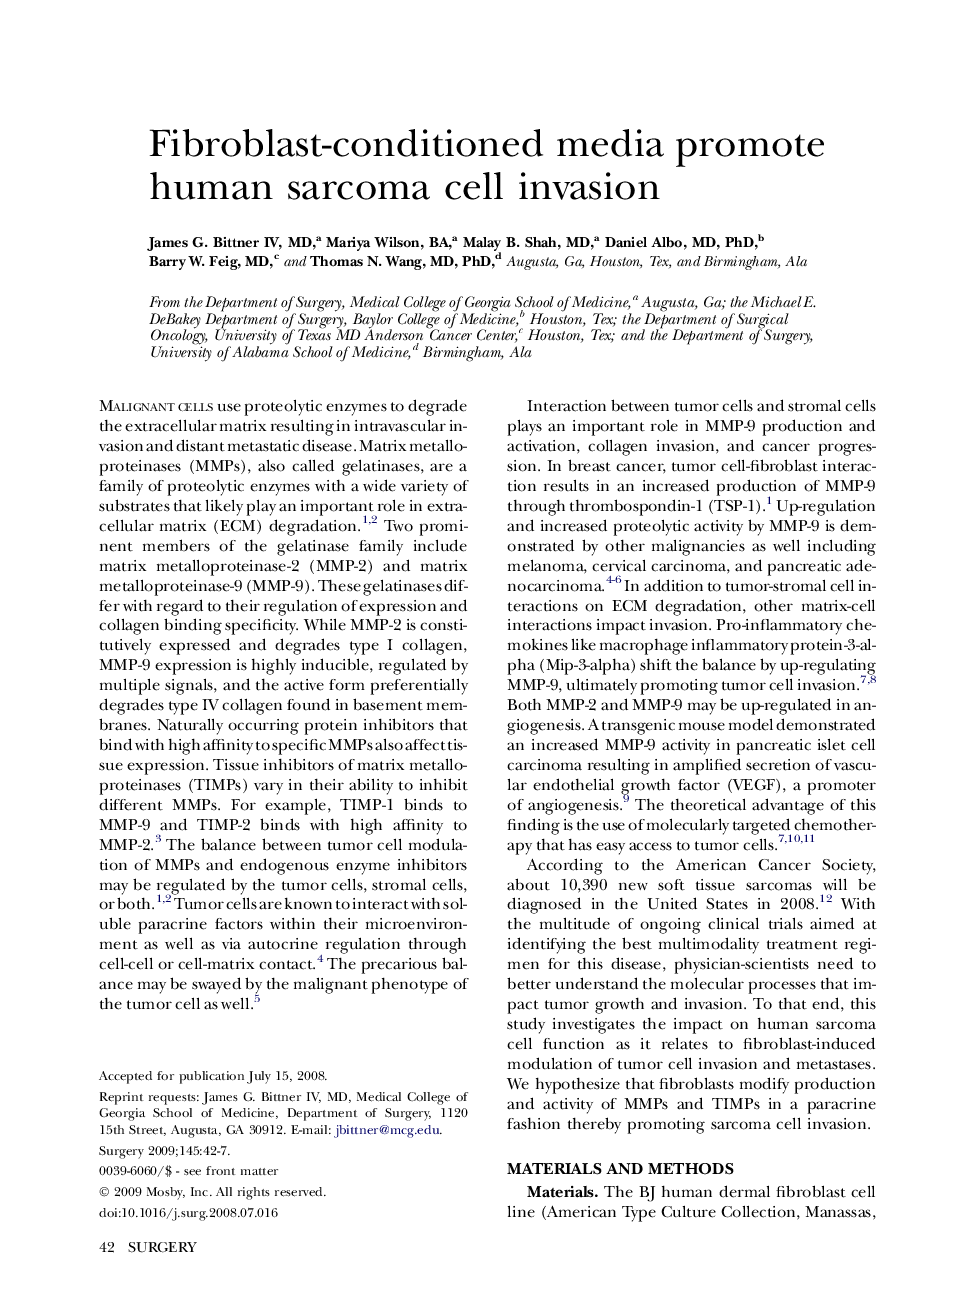 Fibroblast-conditioned media promote human sarcoma cell invasion